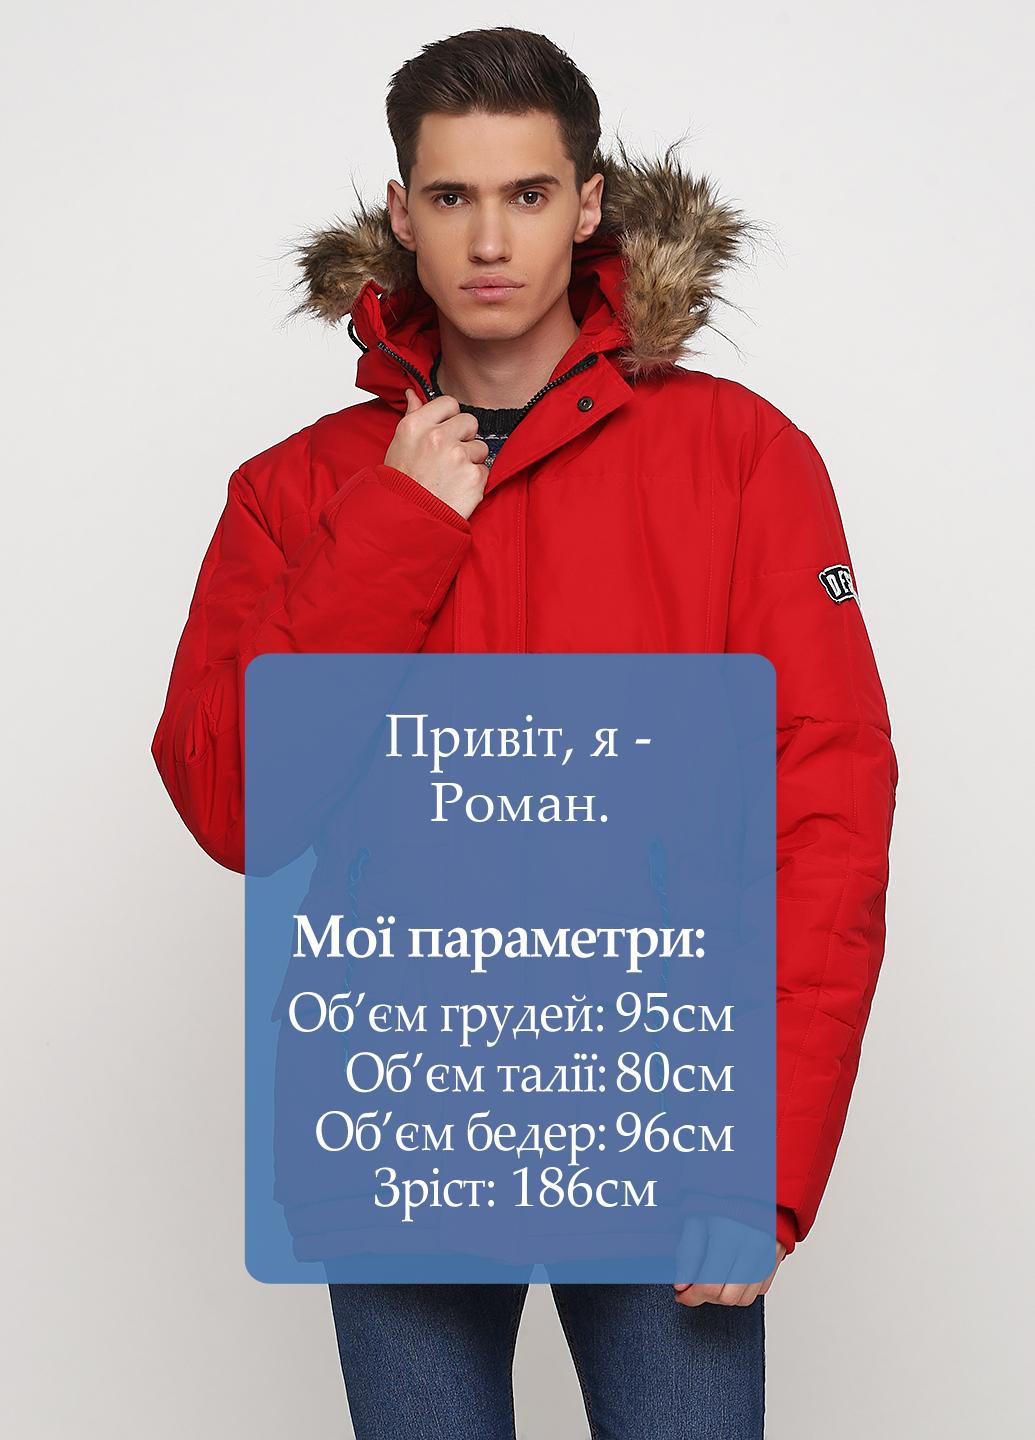 Красная зимняя куртка Desigual